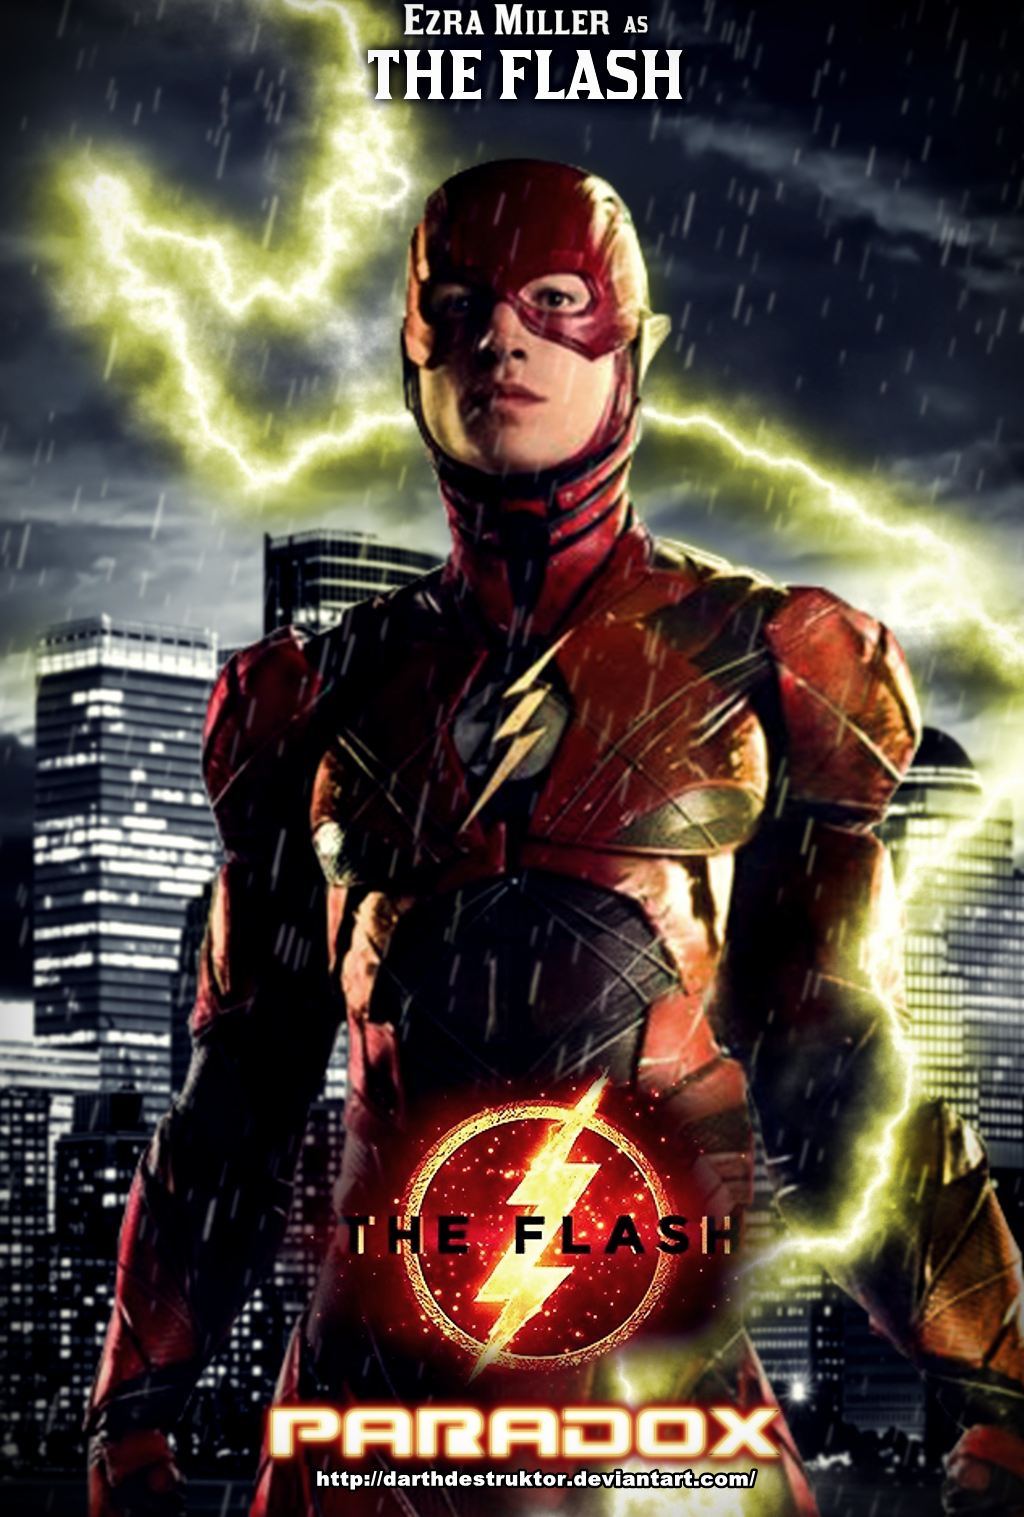 The Flash movie poster - Flash version by DarthDestruktor ...